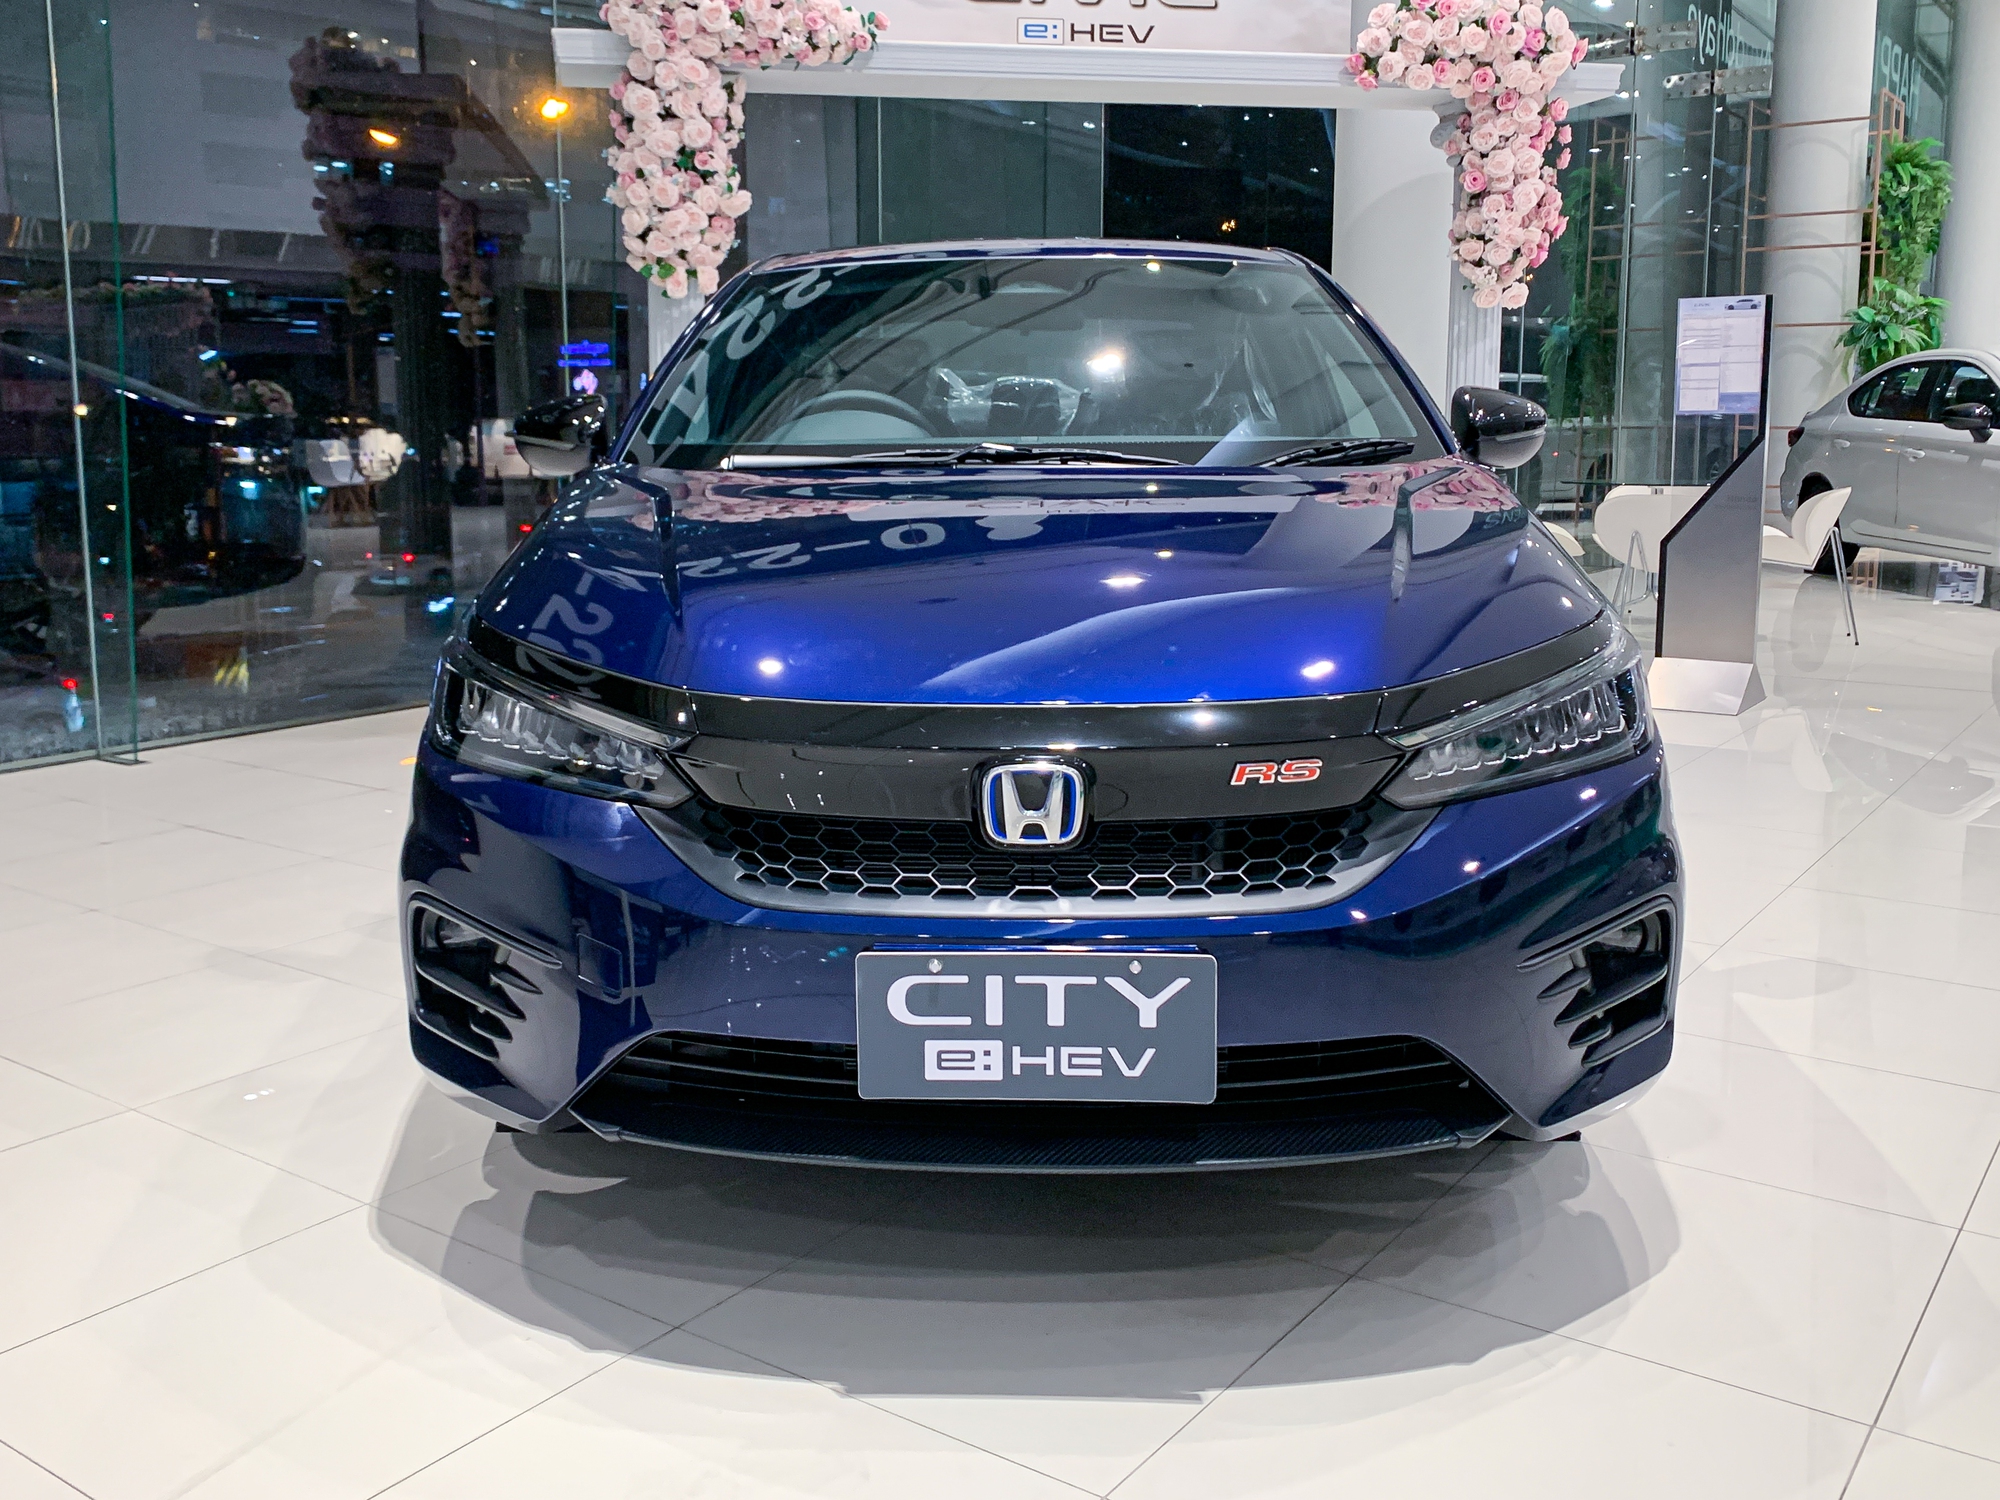 Civic hybrid mới  con bài chiến lược xe hybrid của Honda  Tạp chí Kinh tế  Sài Gòn